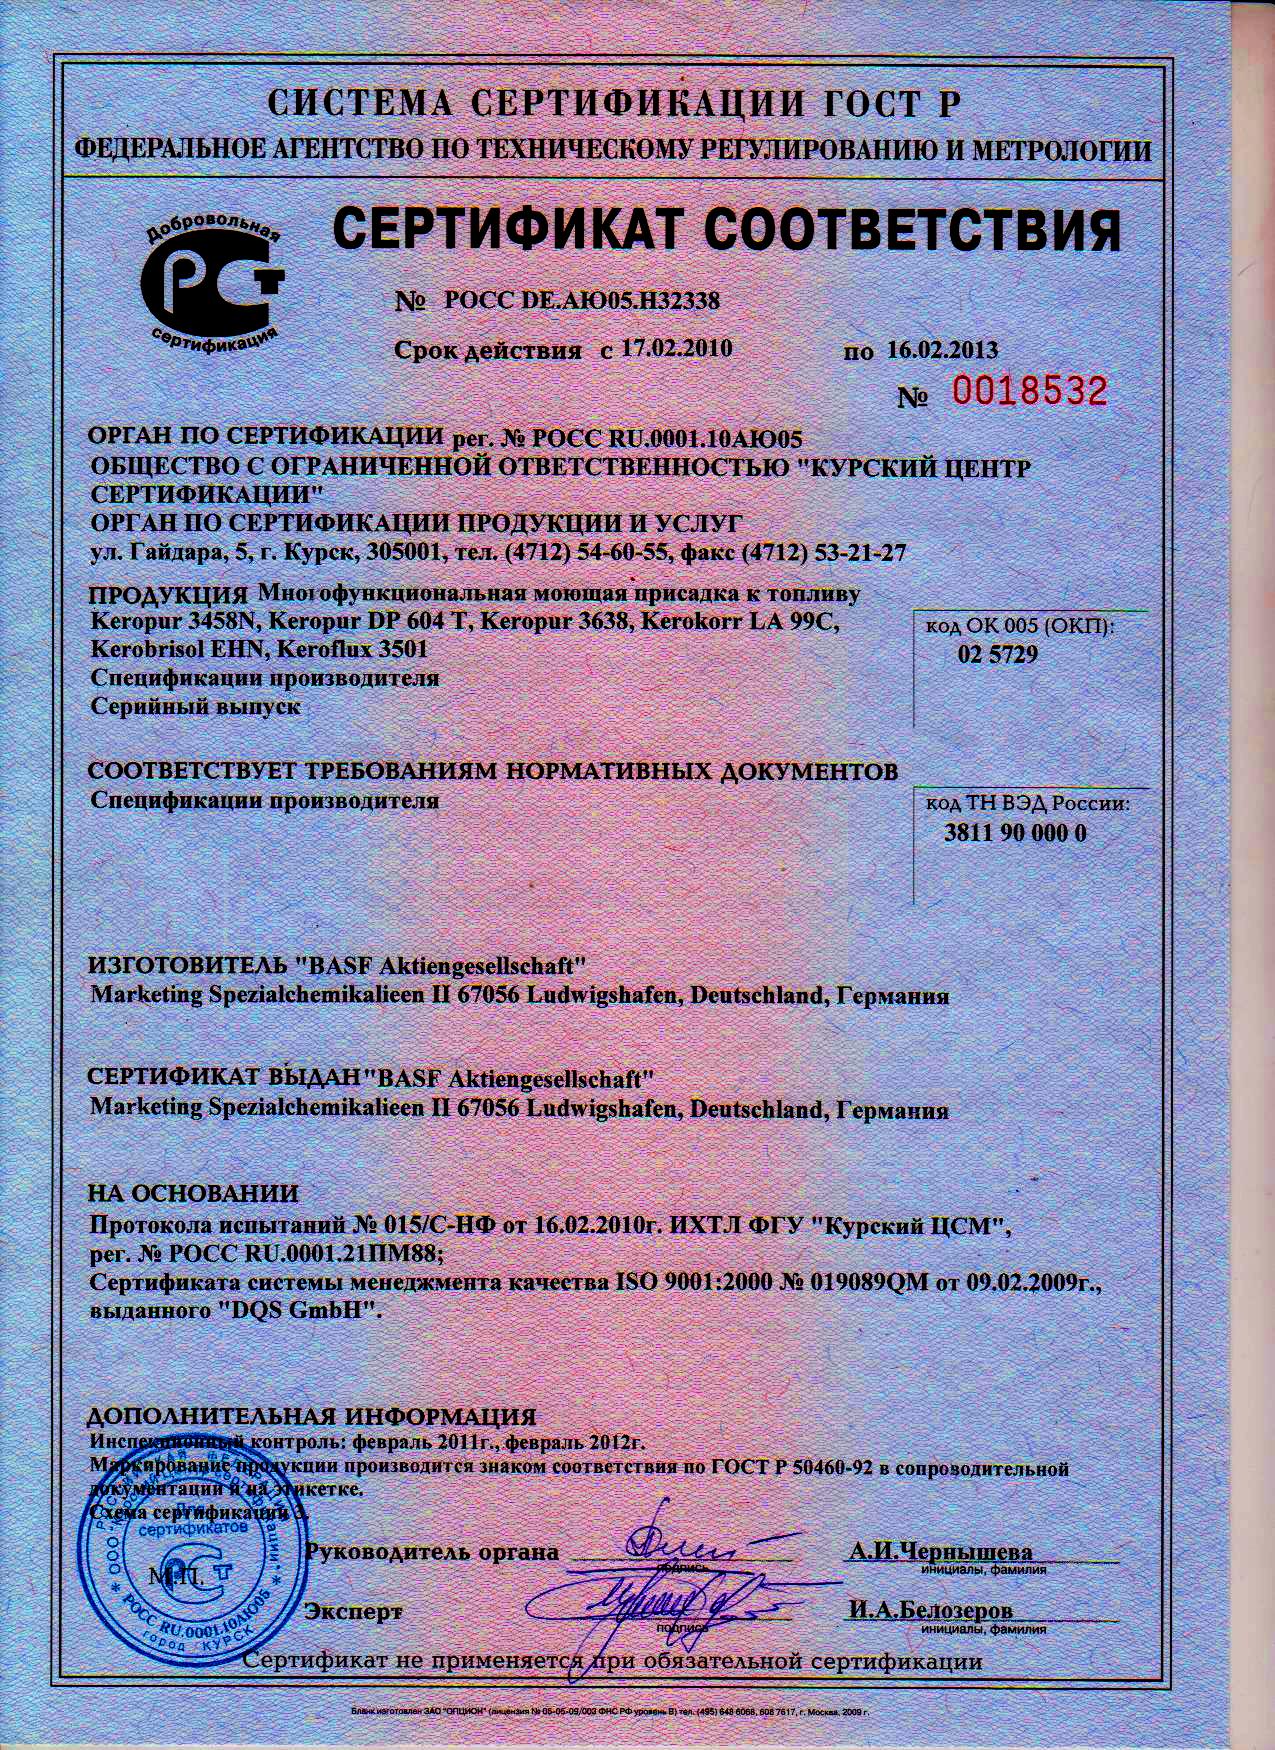 Сертификат соответствия Kerokorr LA 99C